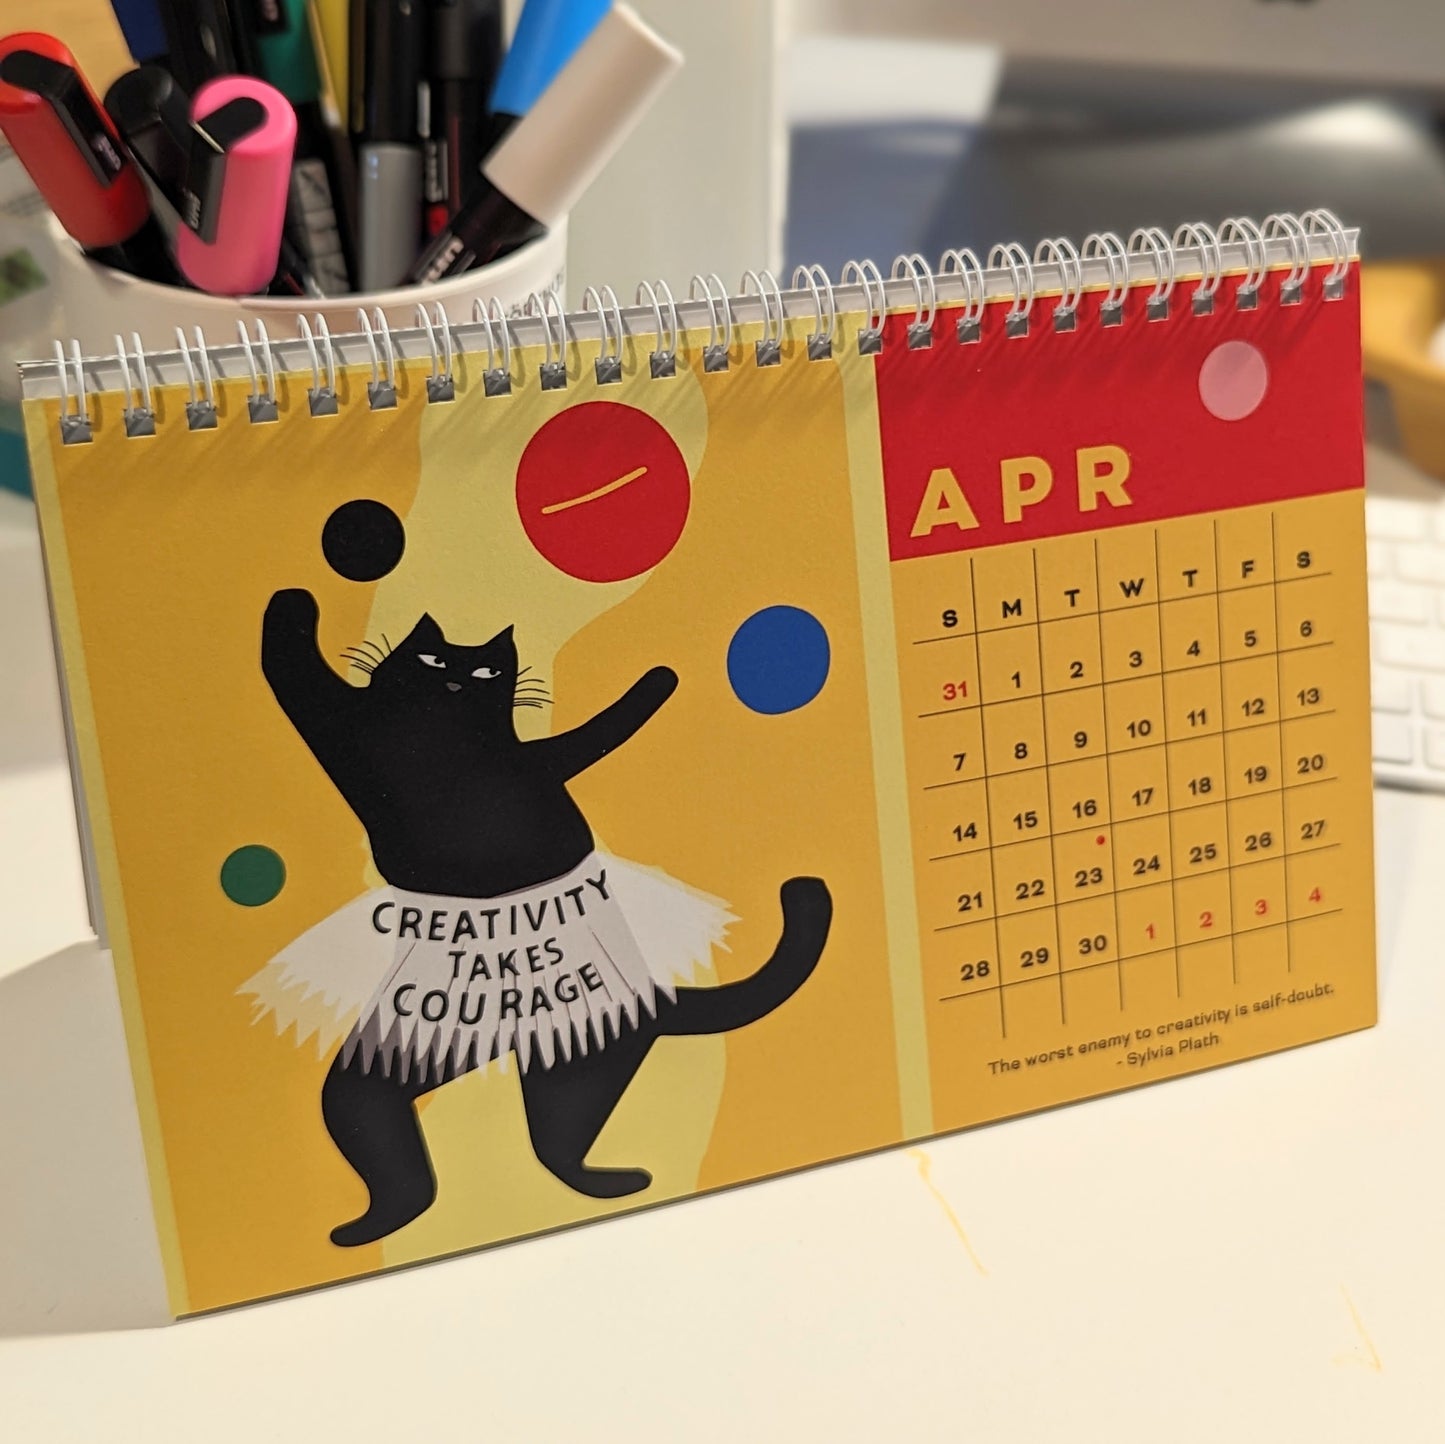 2024 Wise Cats Calendar